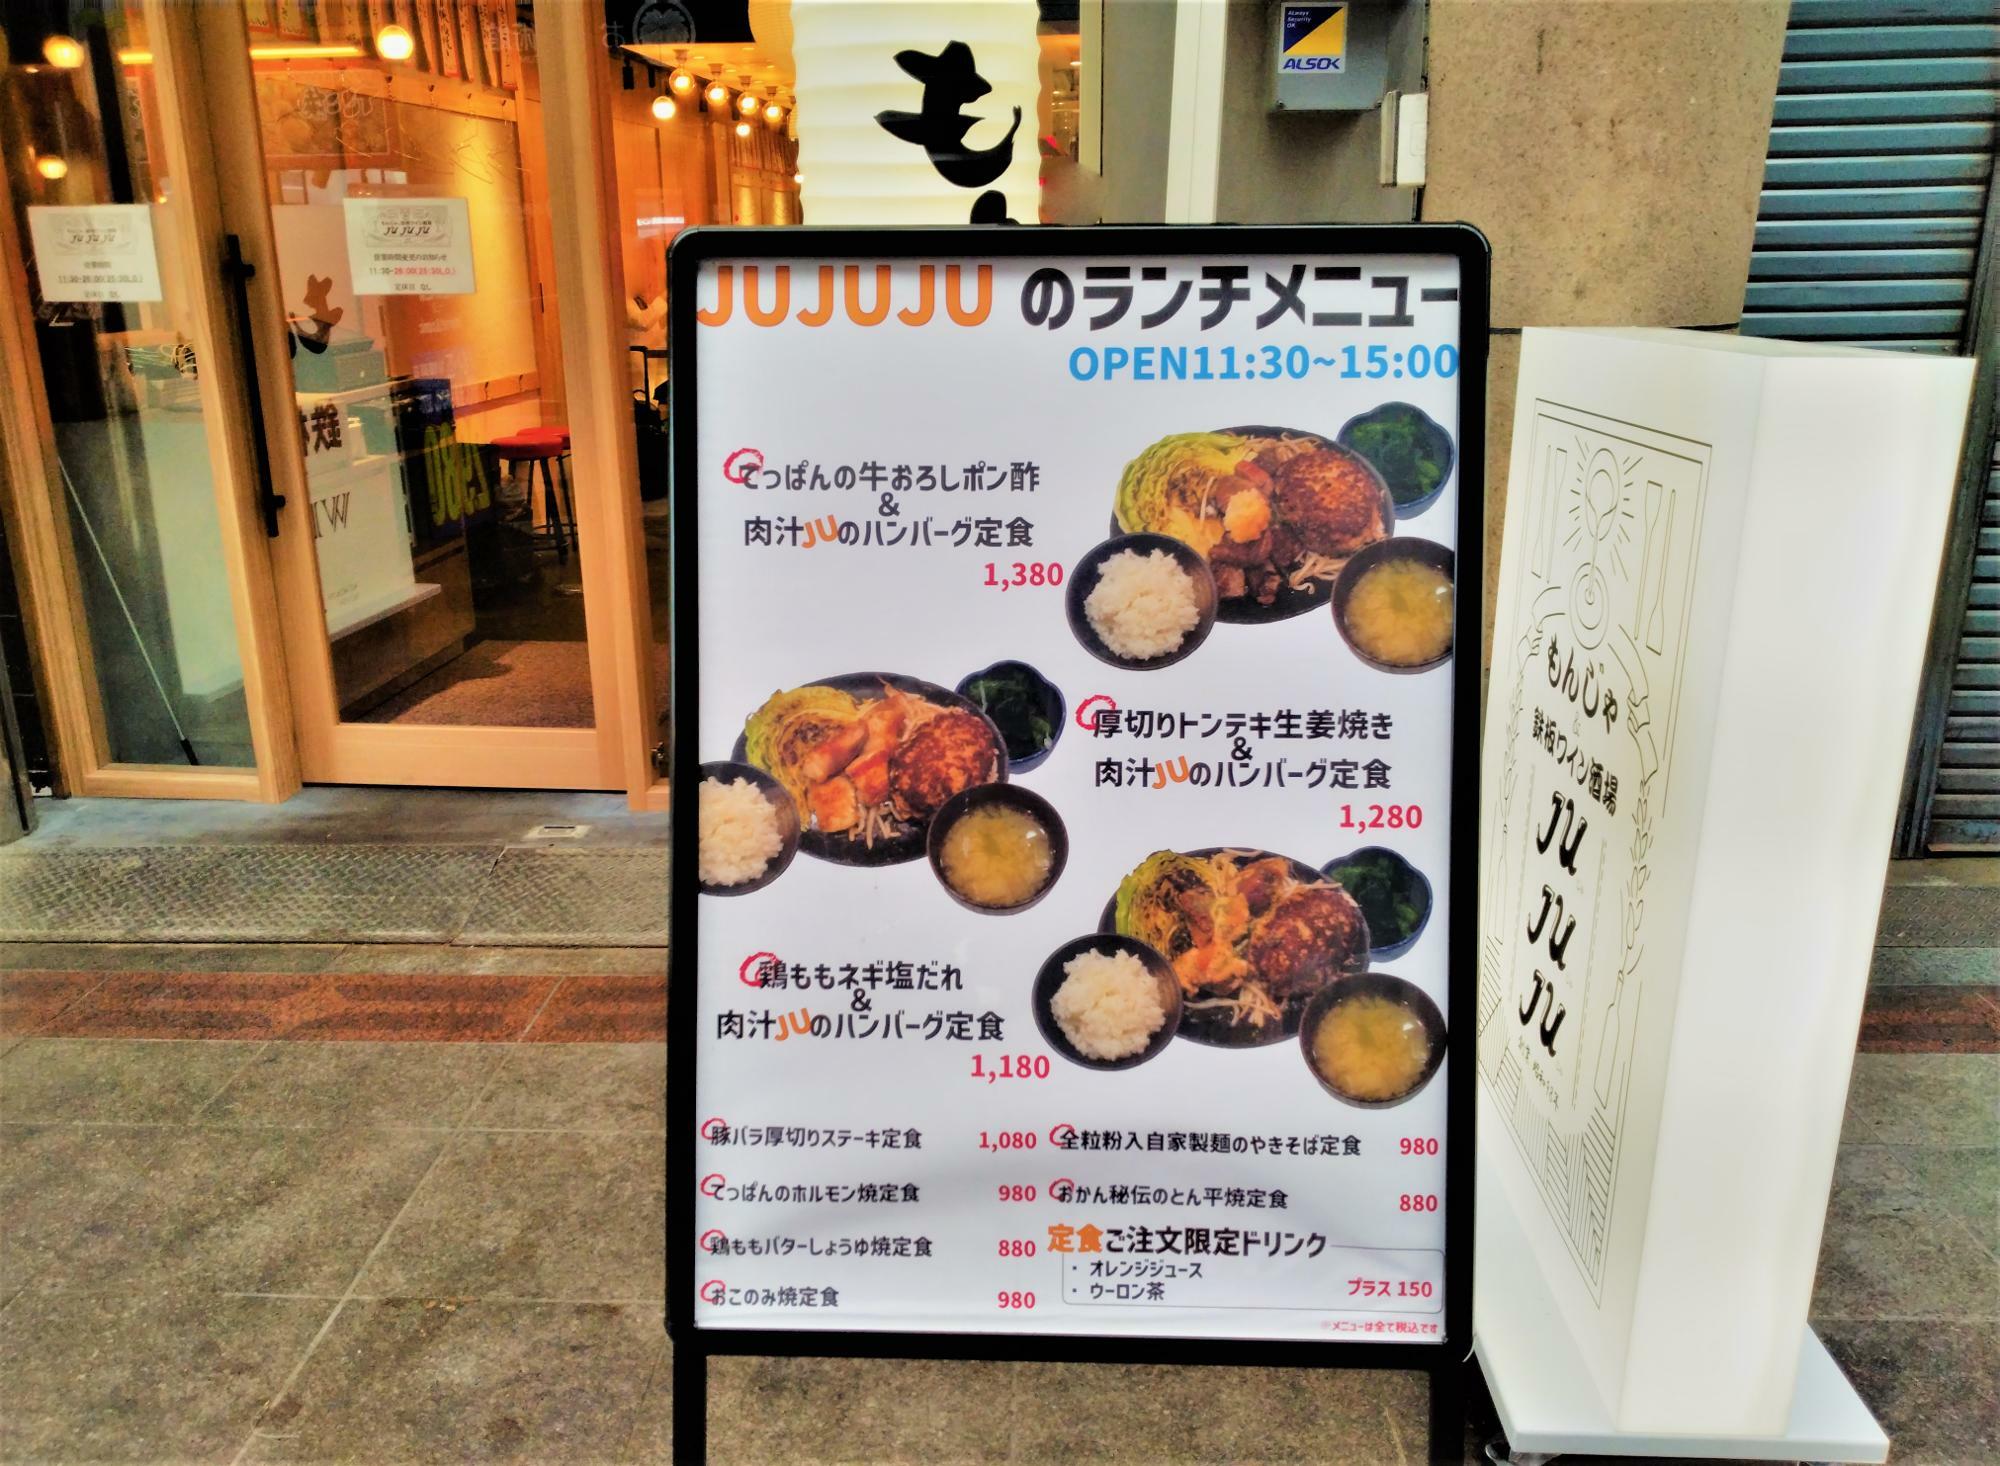 「もんじゃ＆鉄板ワイン酒場 JUJUJU」の店頭にはランチの看板が。